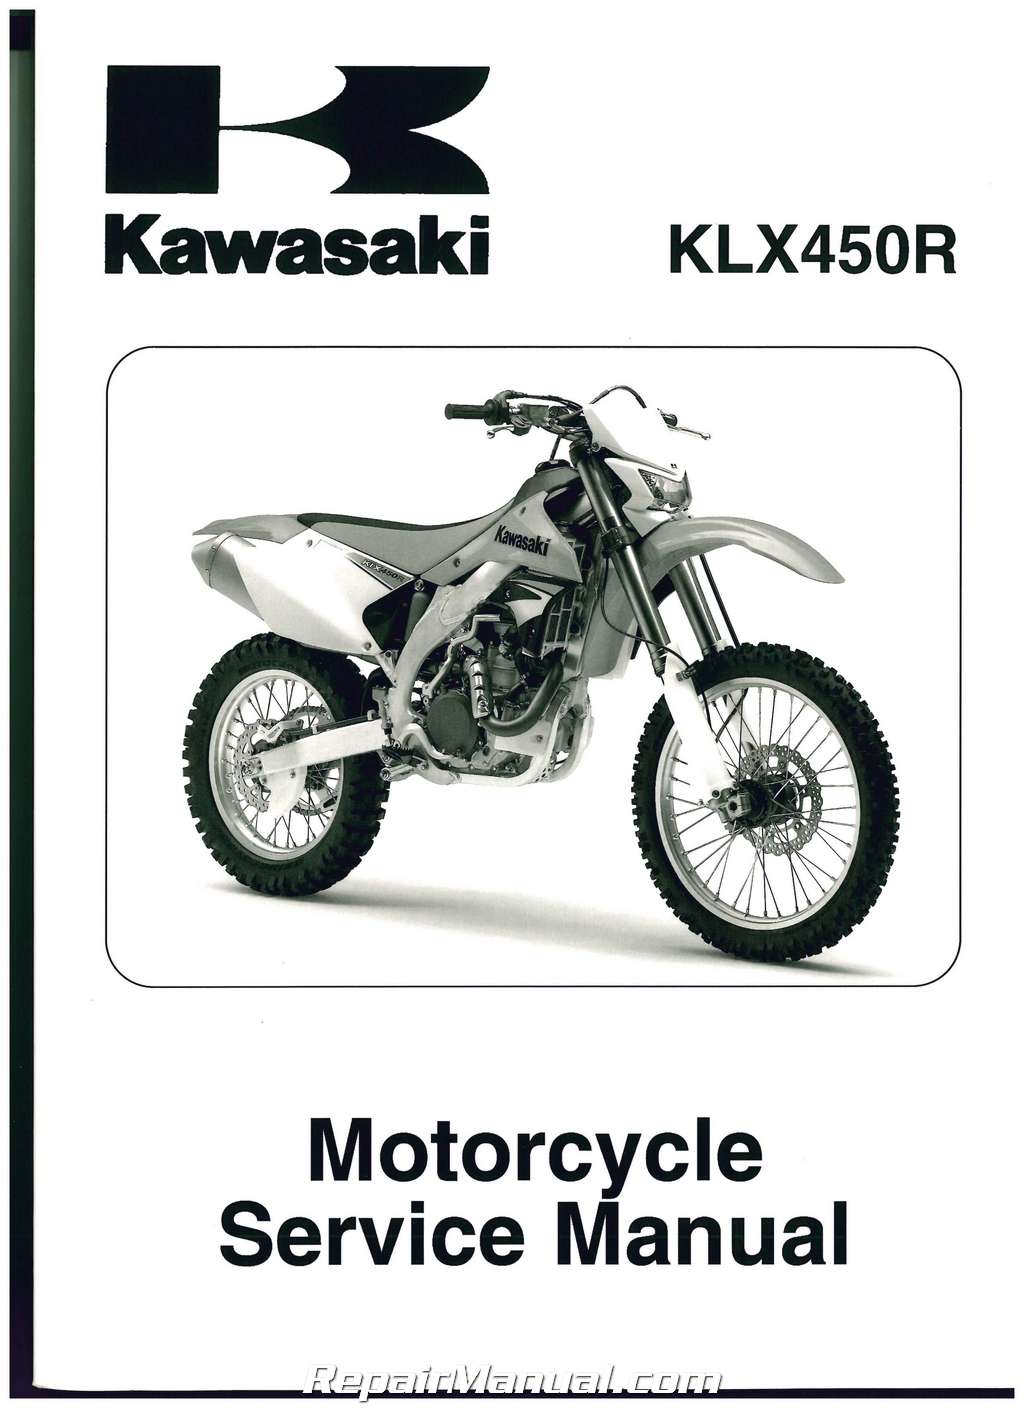 kawasaki klx450r